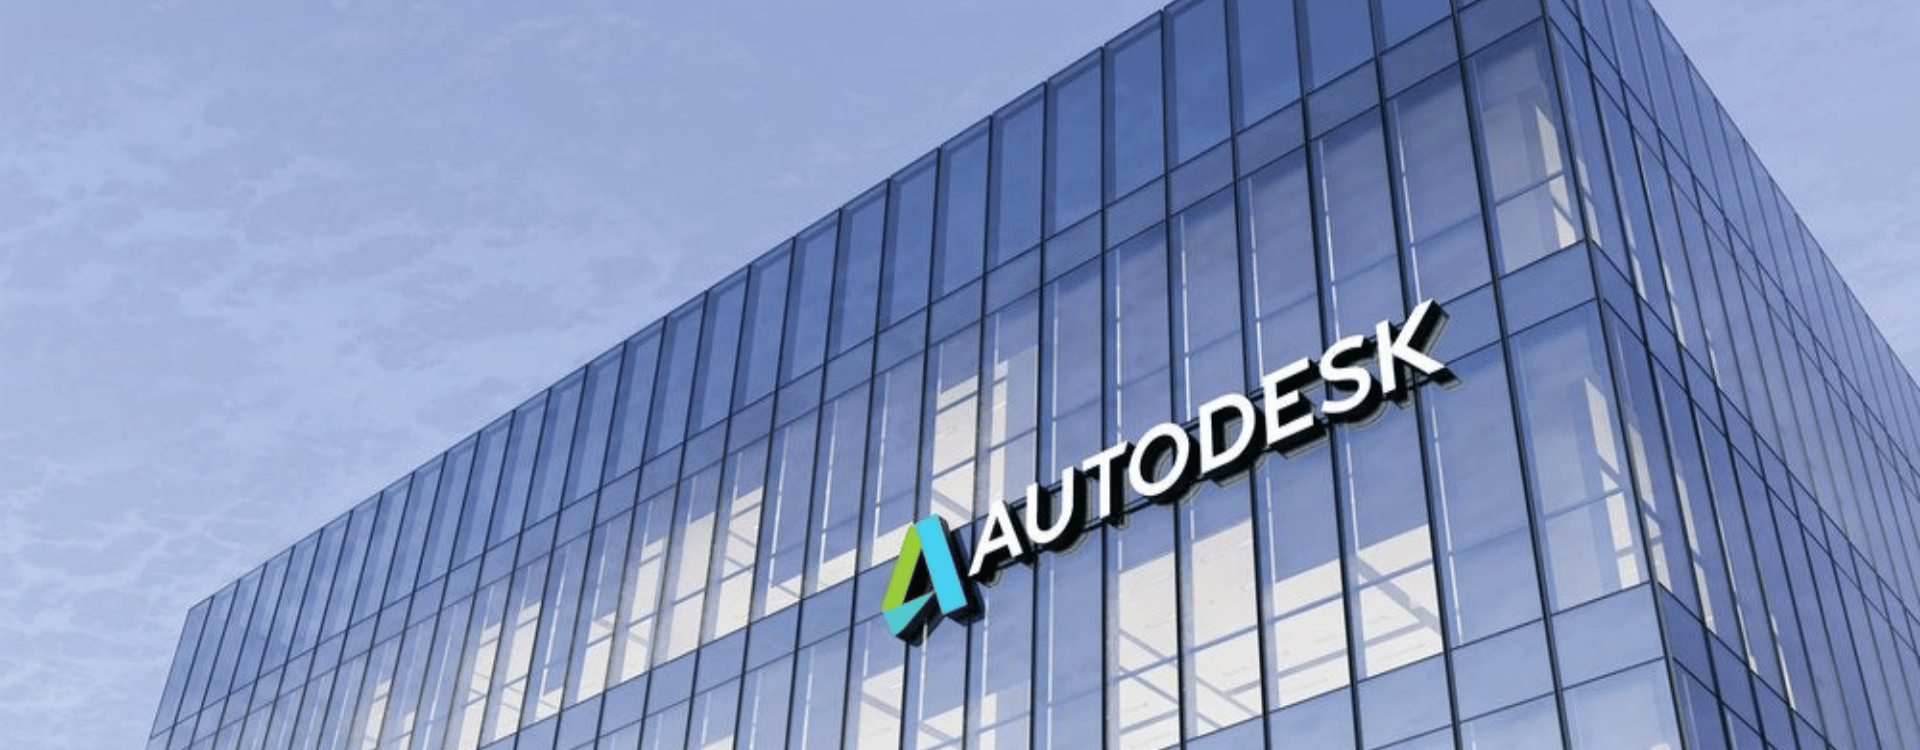 Autodesk Là Gì? Điểm danh các phần mềm thiết kế Autodesk phổ biến nhất hiện nay 